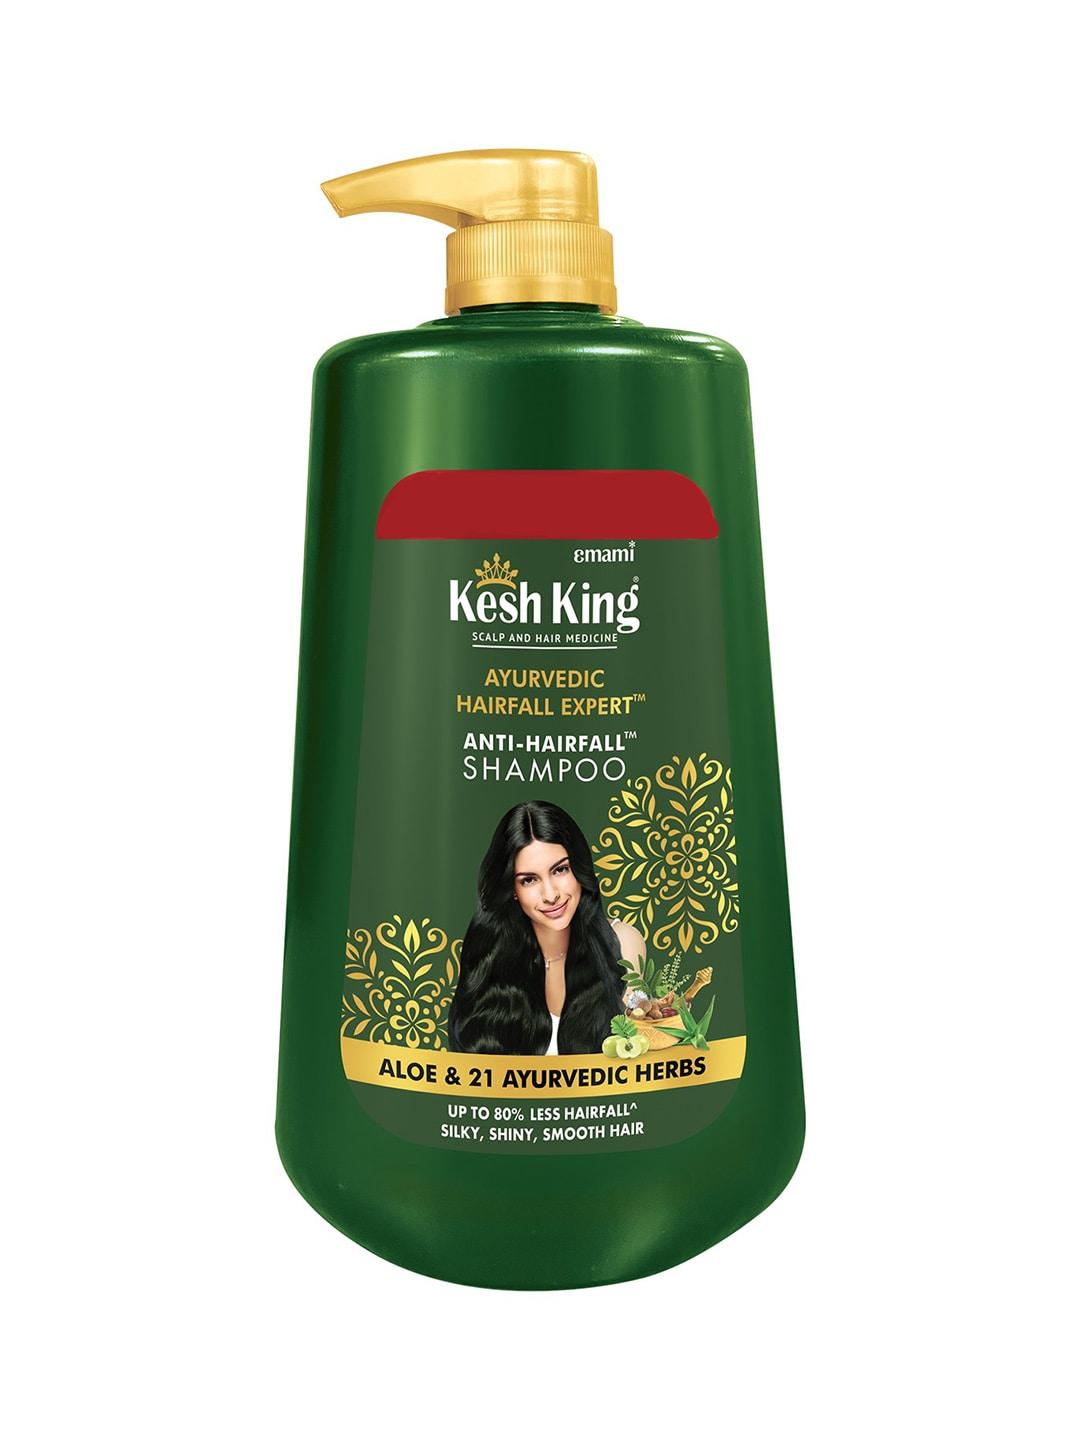 emami-kesh-king-ayurvedic-hairfall-expert-anti-hairfall-shampoo-with-aloe-&-herbs---1000ml